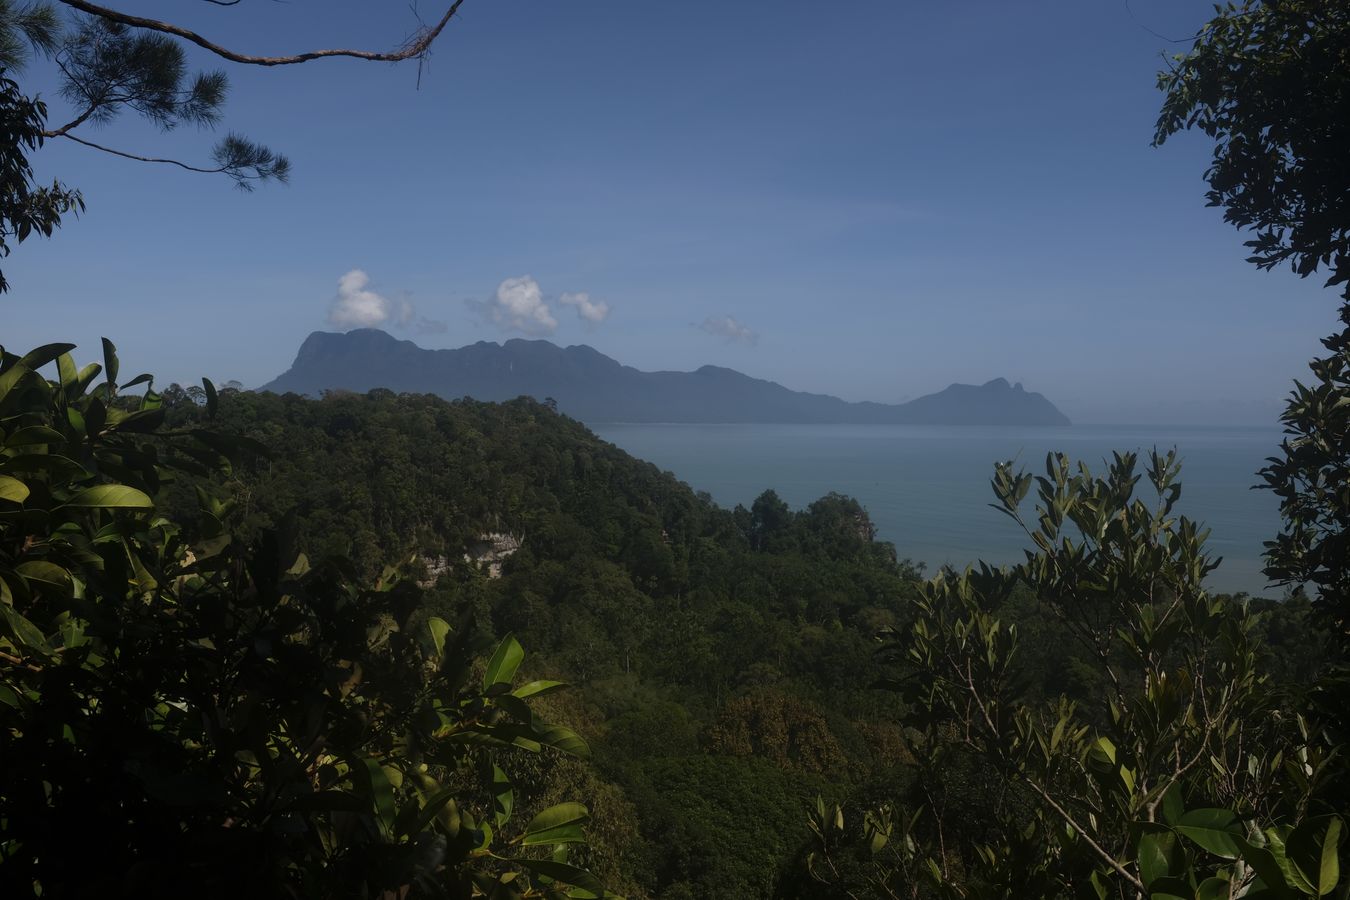 Rainforest Landscape and Santubong Mountain View